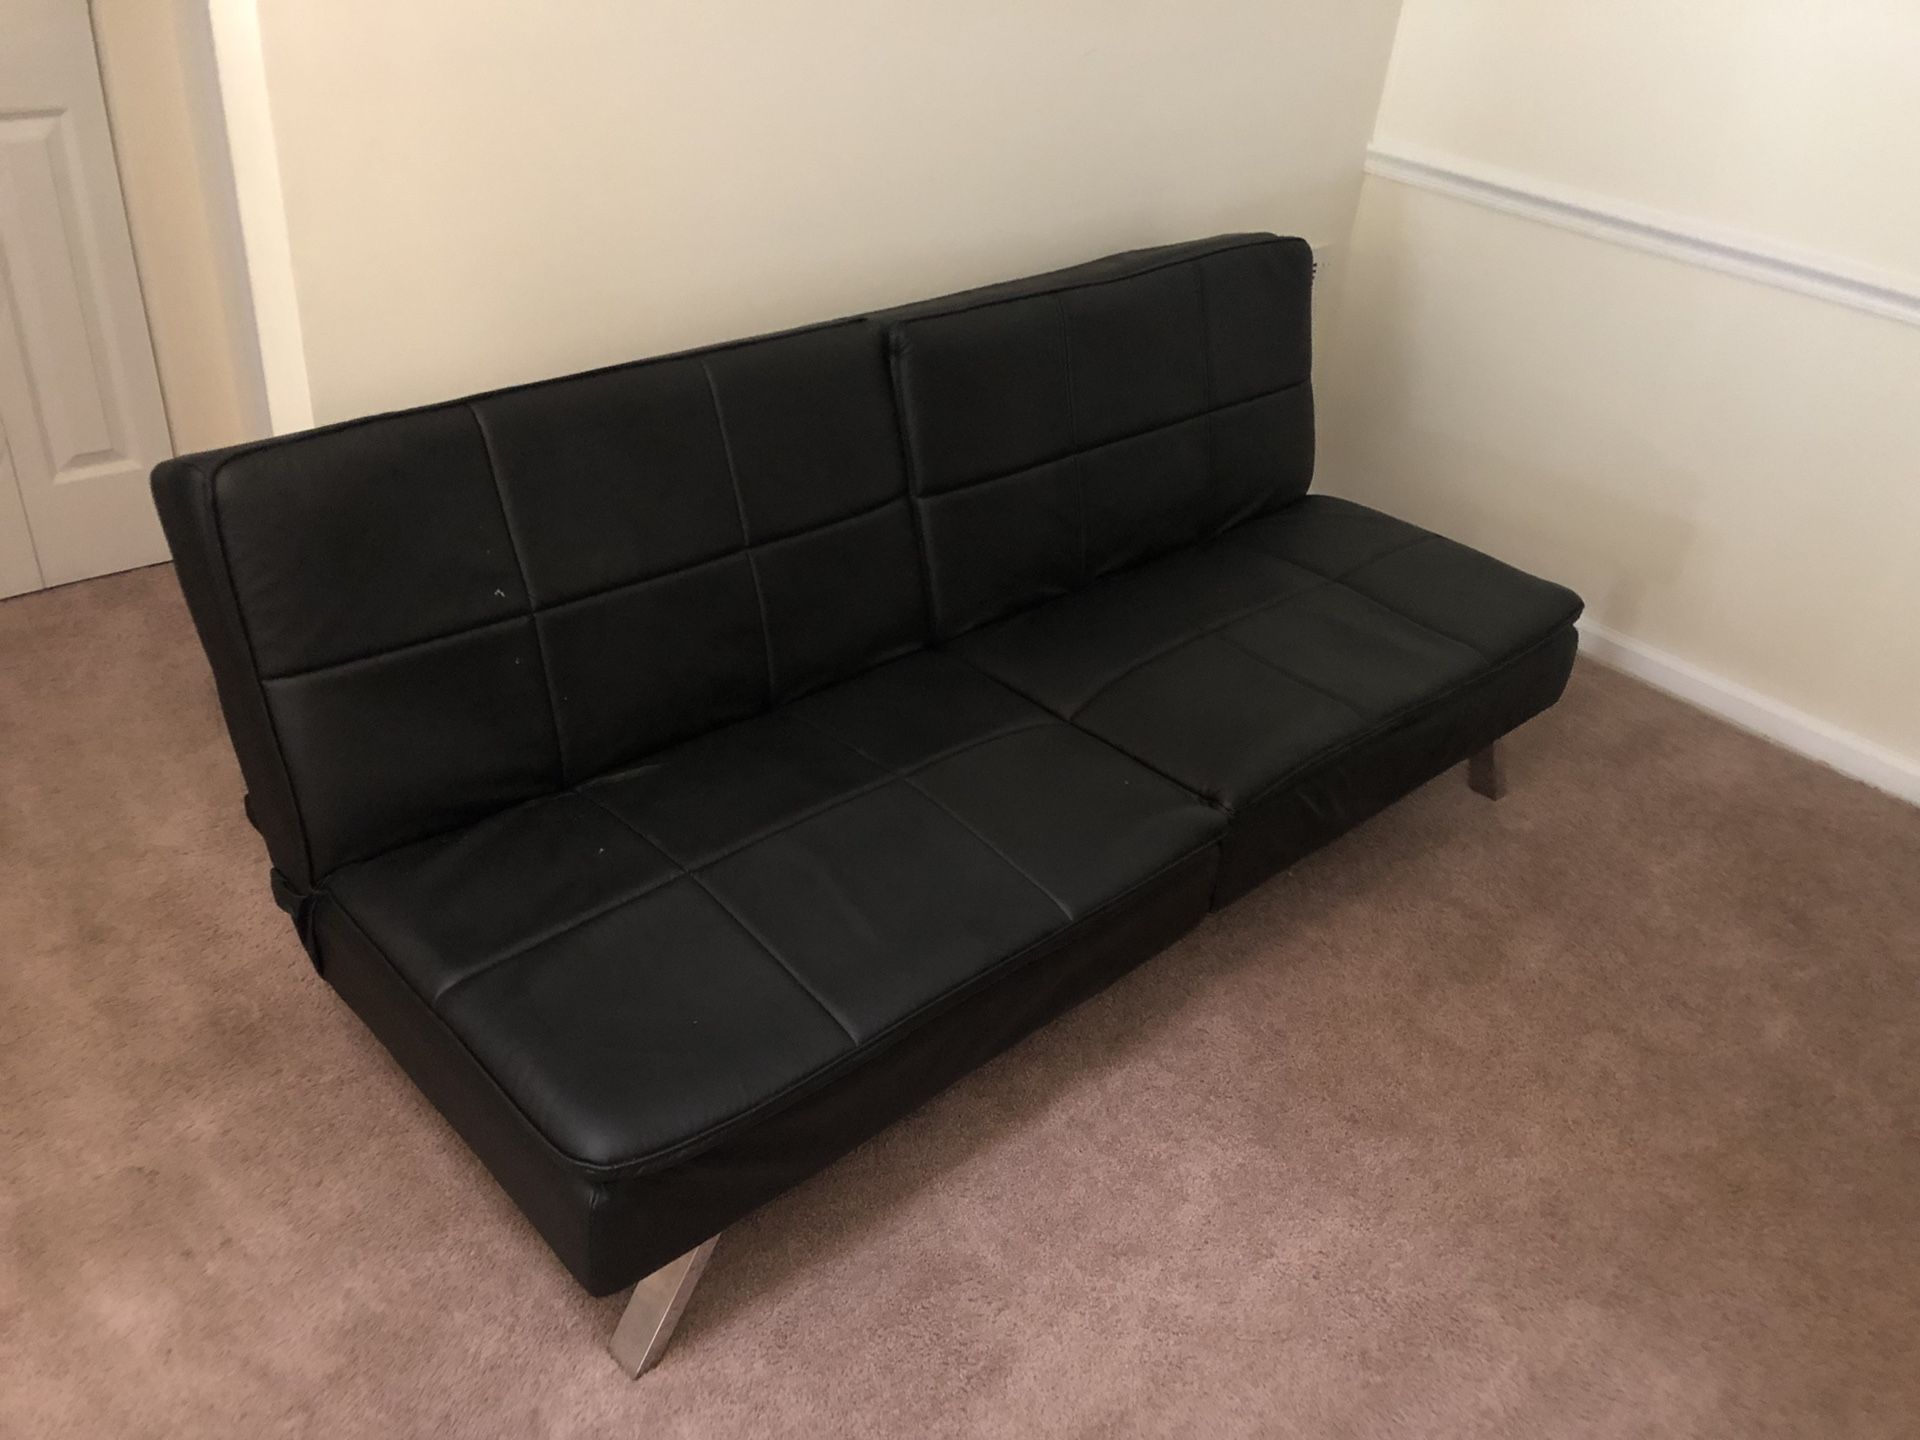 Full sized leather futon